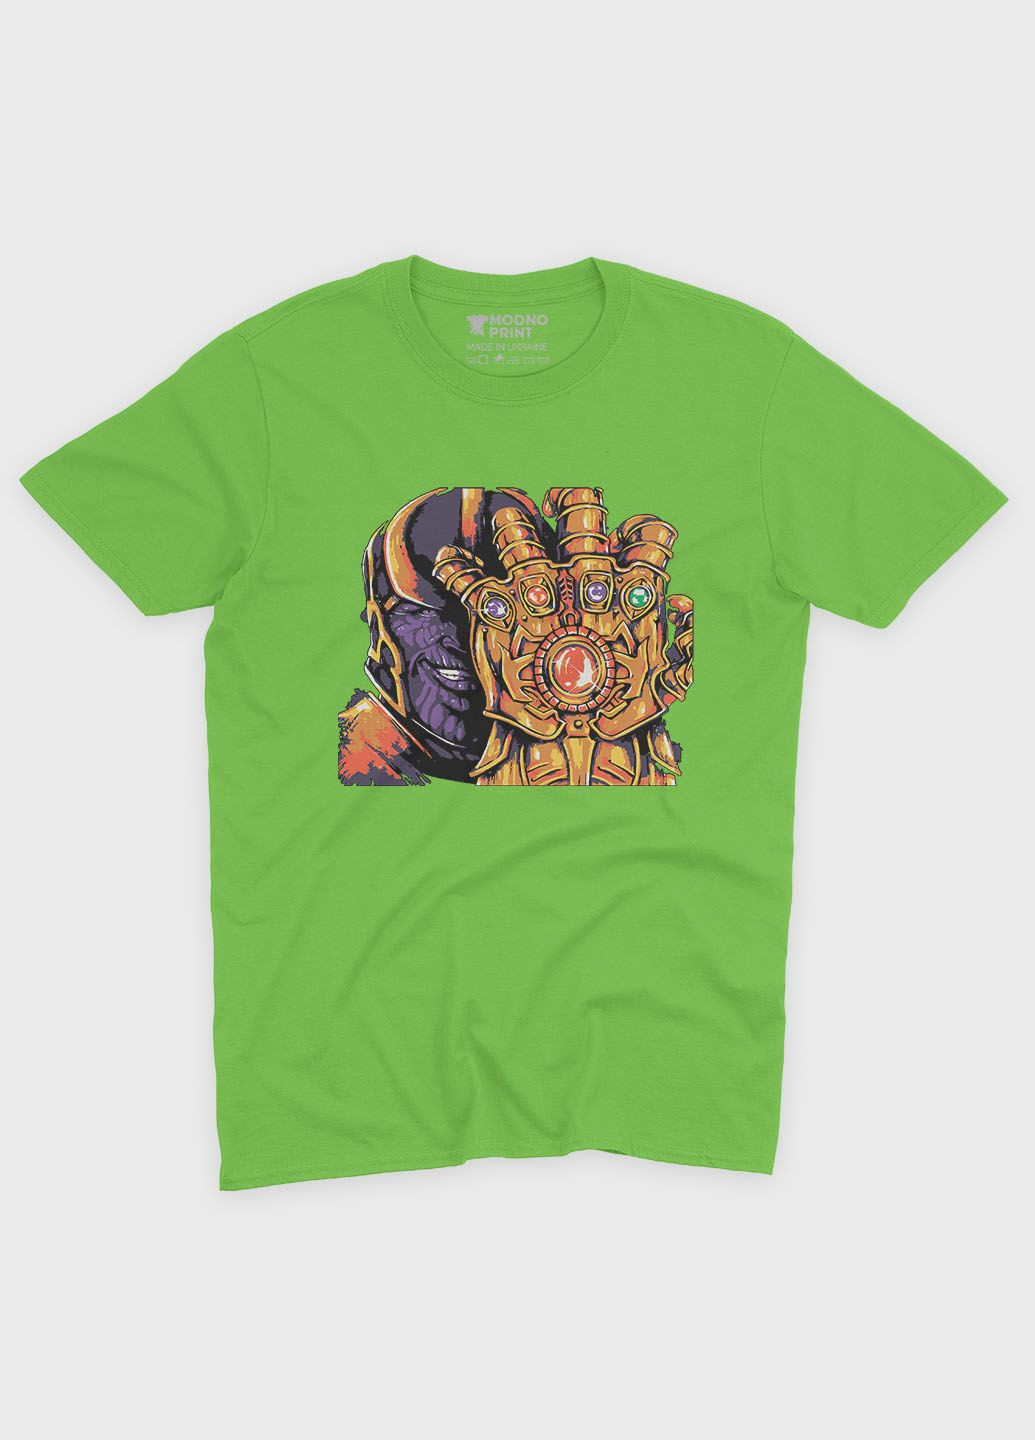 Салатова демісезонна футболка для хлопчика з принтом супезлодія - танос (ts001-1-kiw-006-019-010-b) Modno